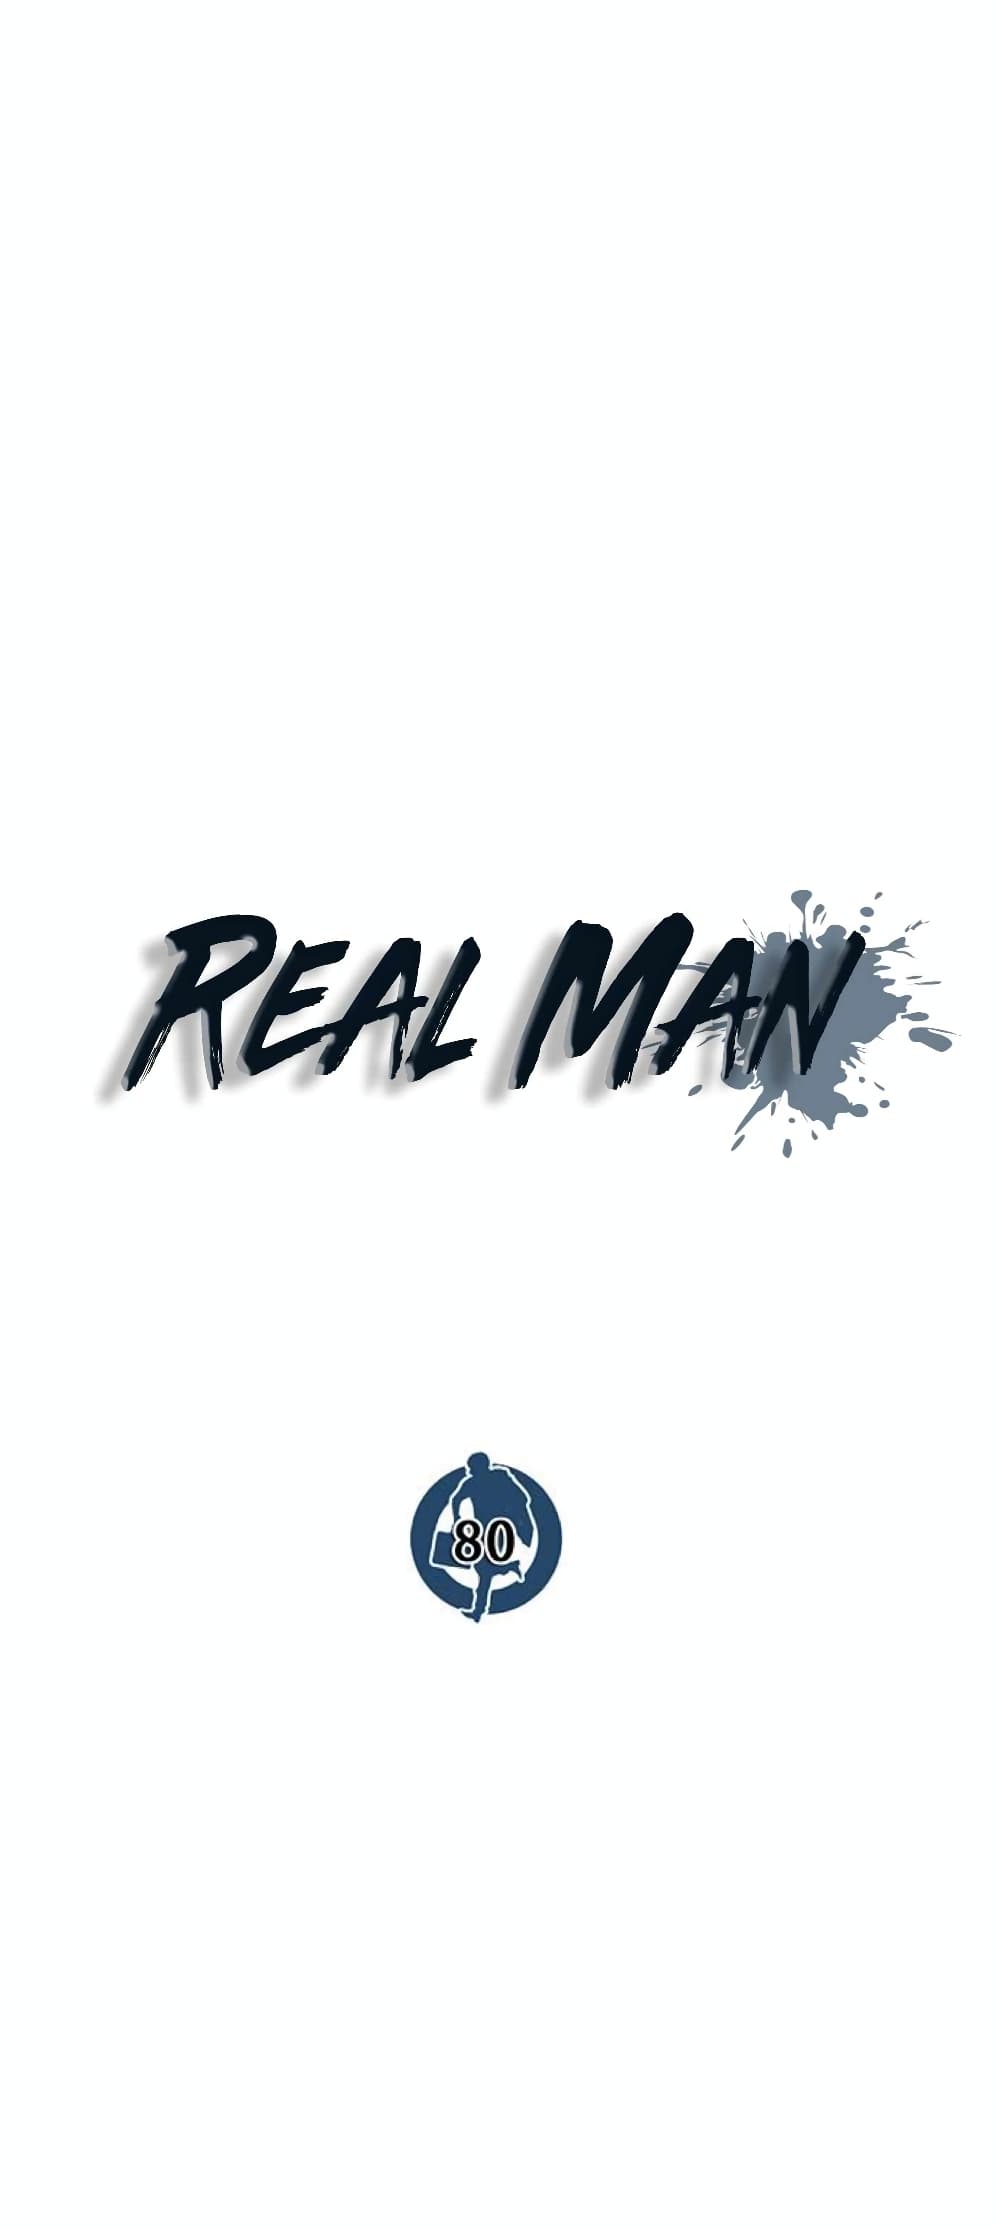 Real Man 80-80